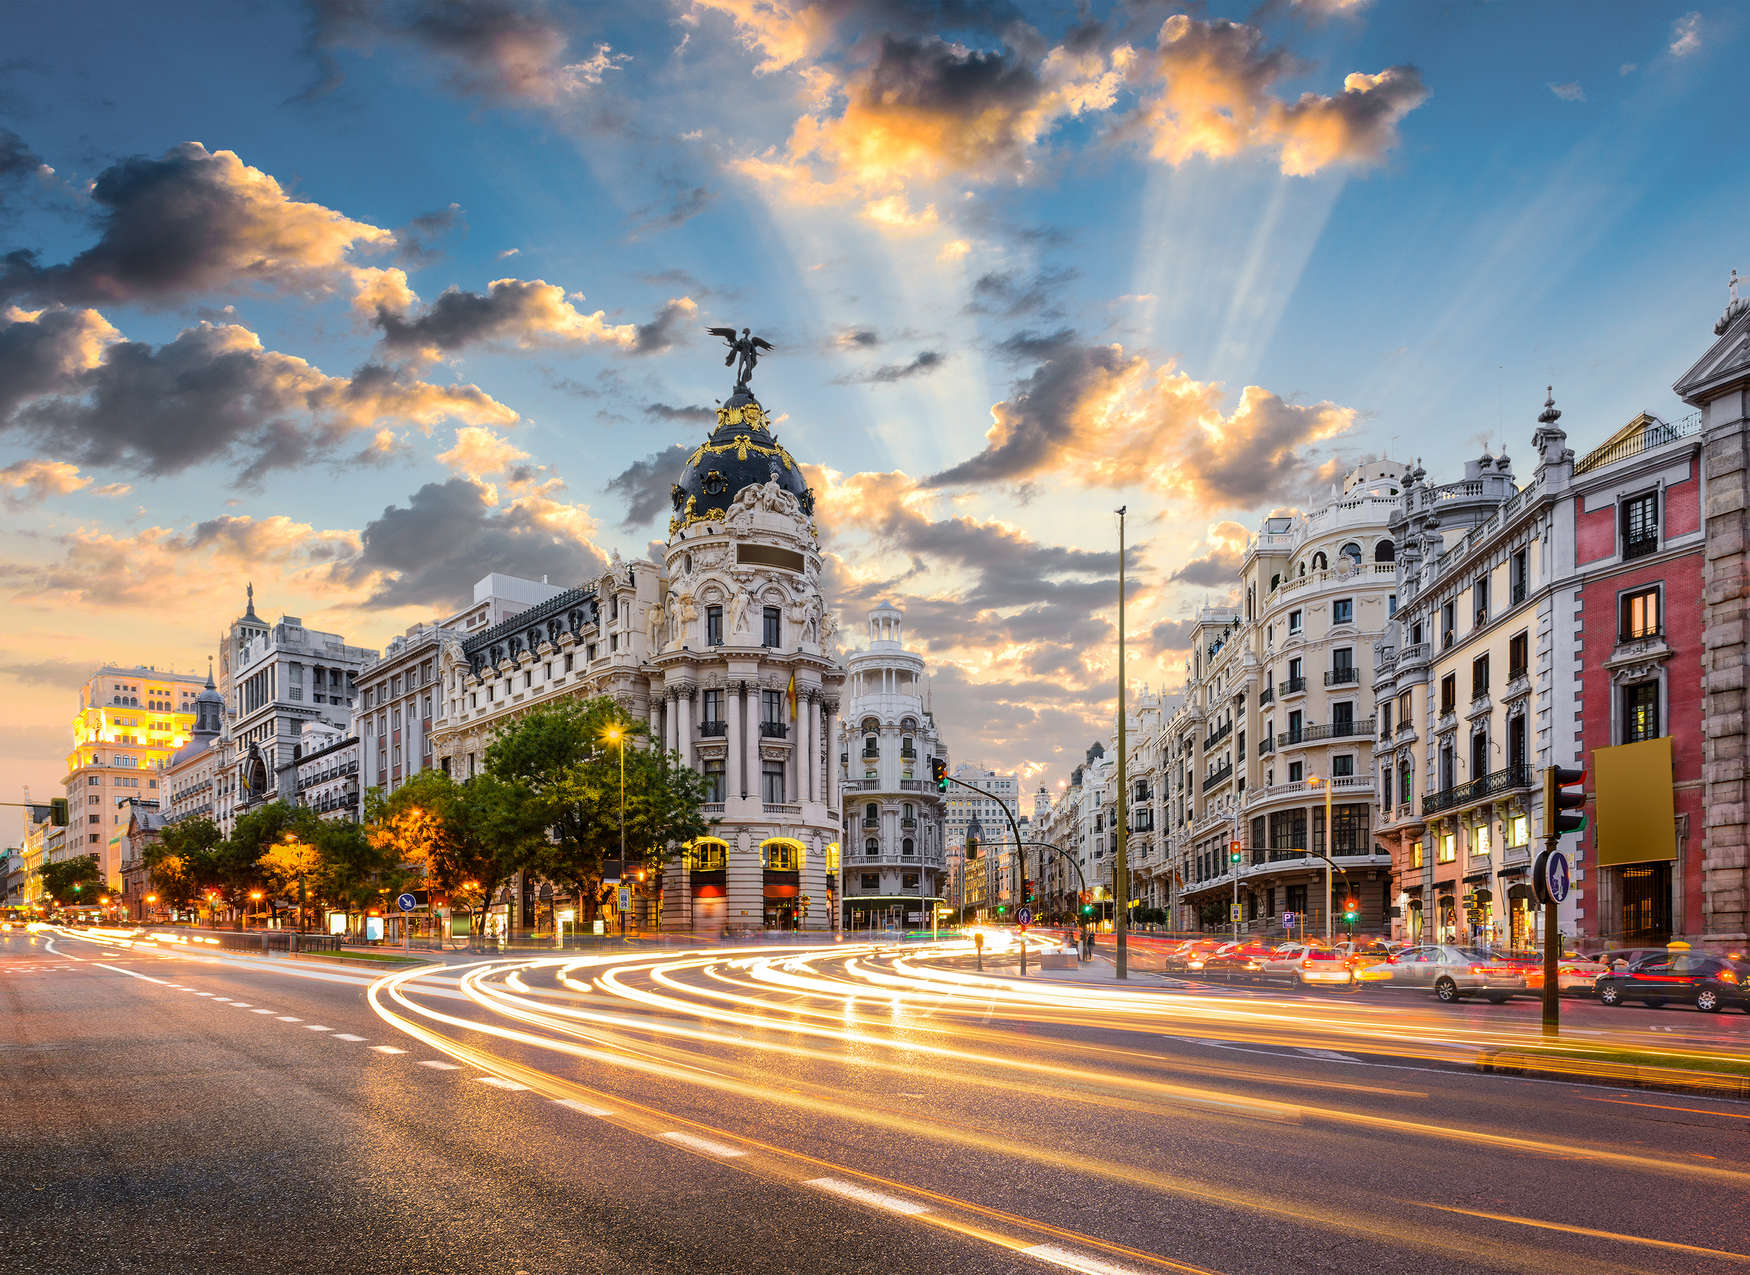             Le strade di Madrid al mattino: blu, grigio, bianco
        